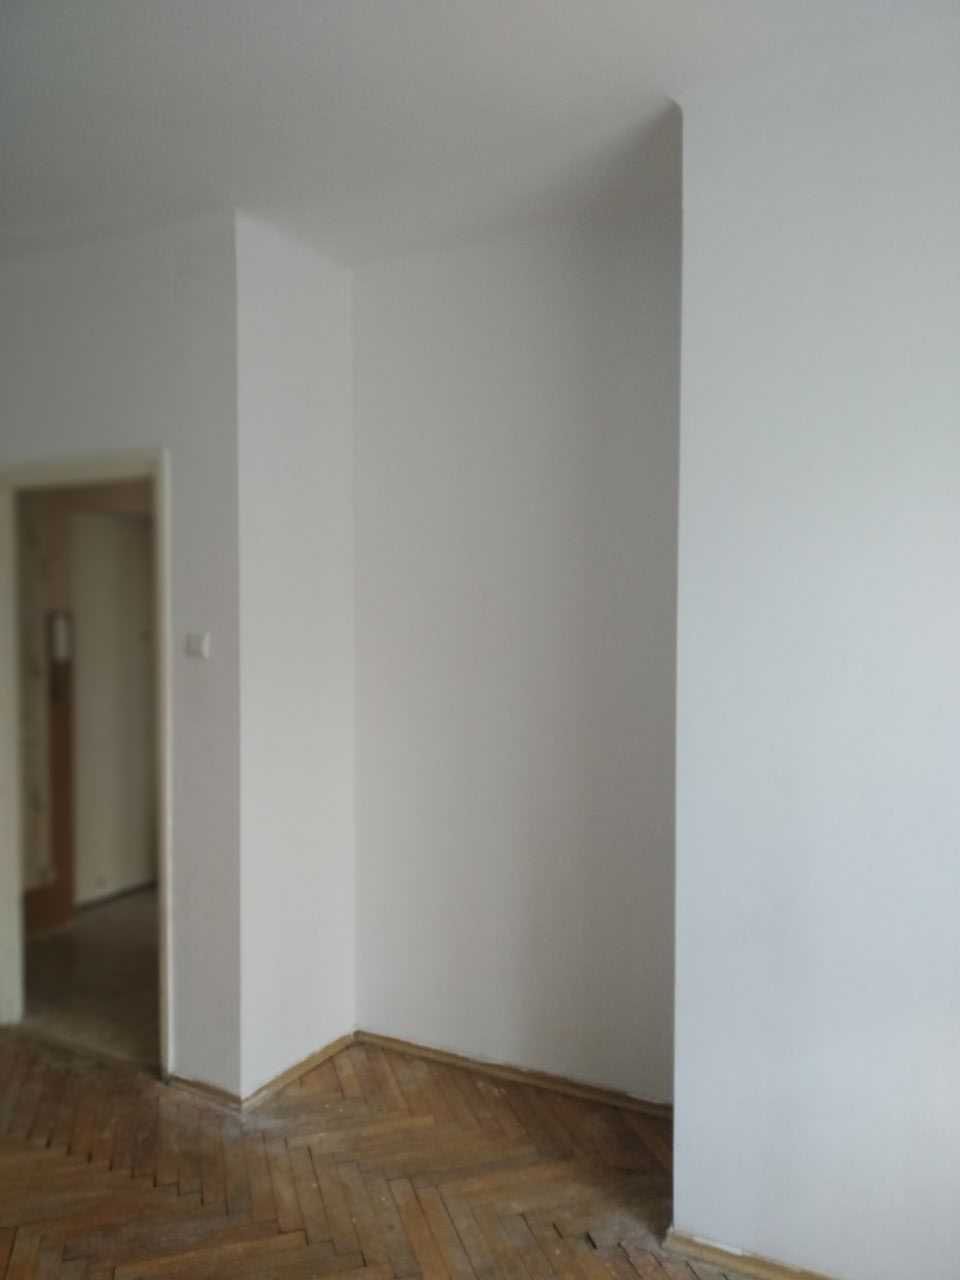 Sprzedam mieszkanie 36 m2 w Skarżysku-Kam. w atrakcyjnej lokalizacji